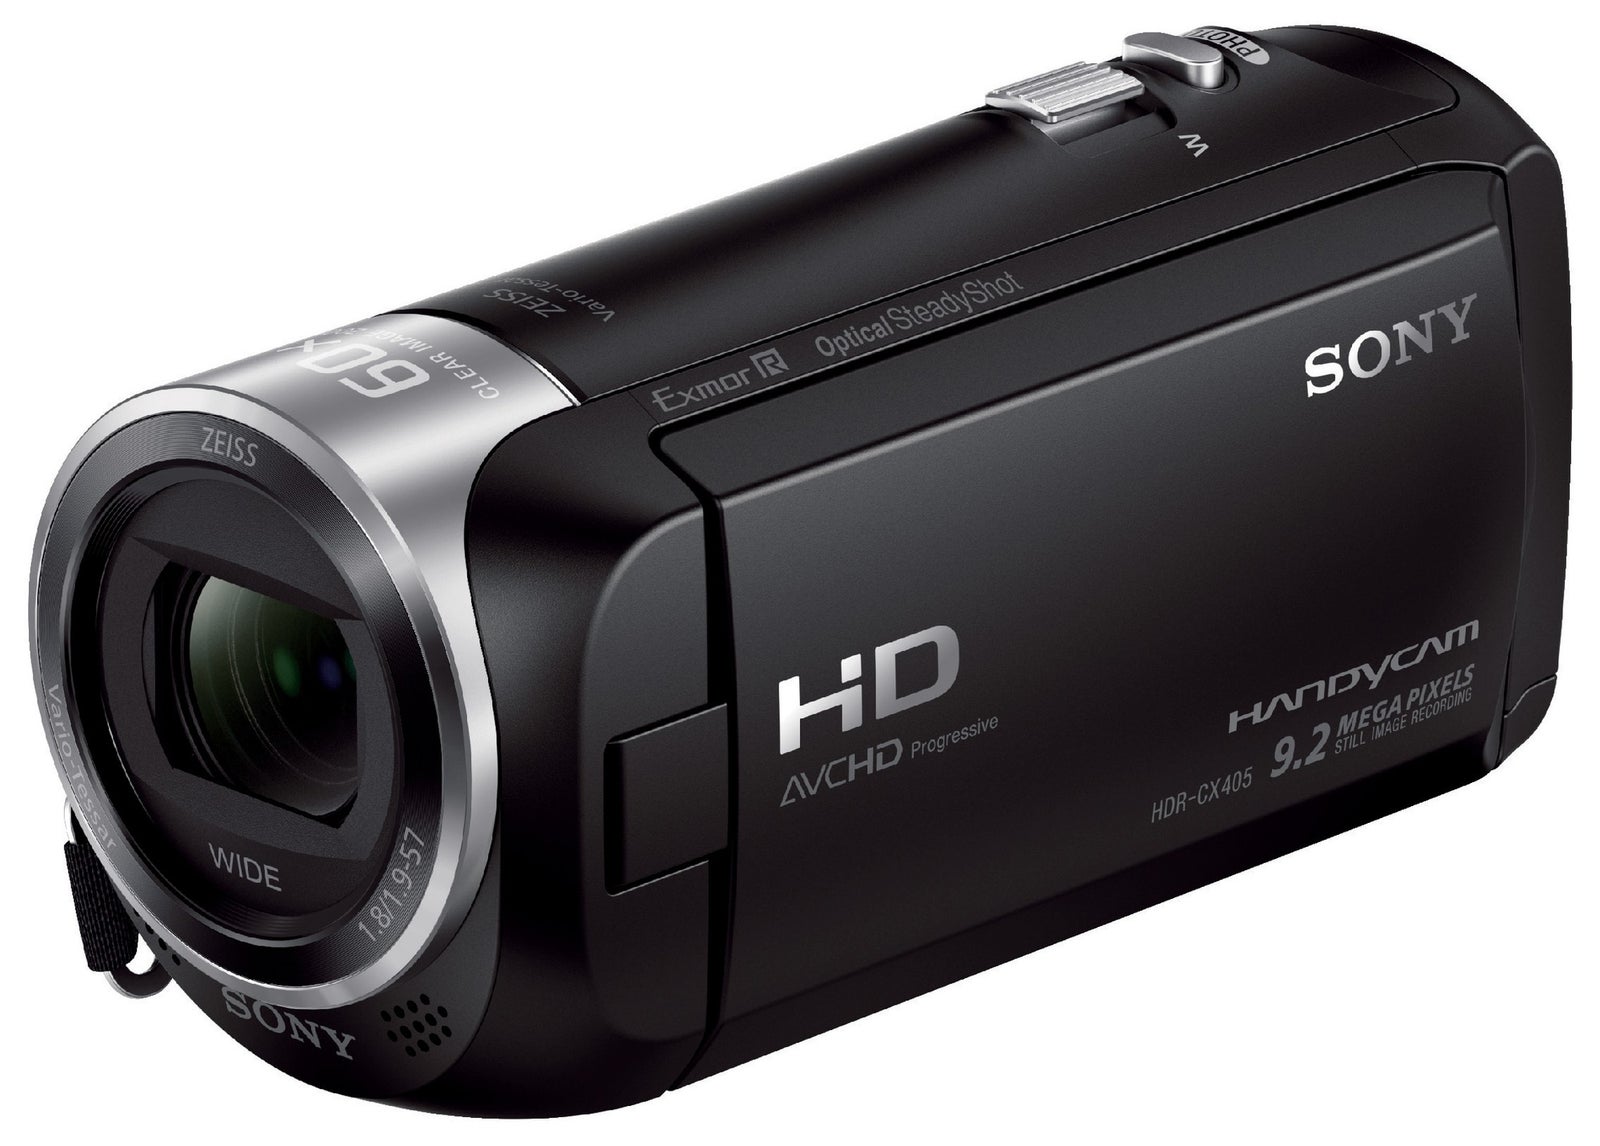 Sony Handycam HDR-CX405 videokamera - sort – dba.dk – og Salg af Nyt og Brugt